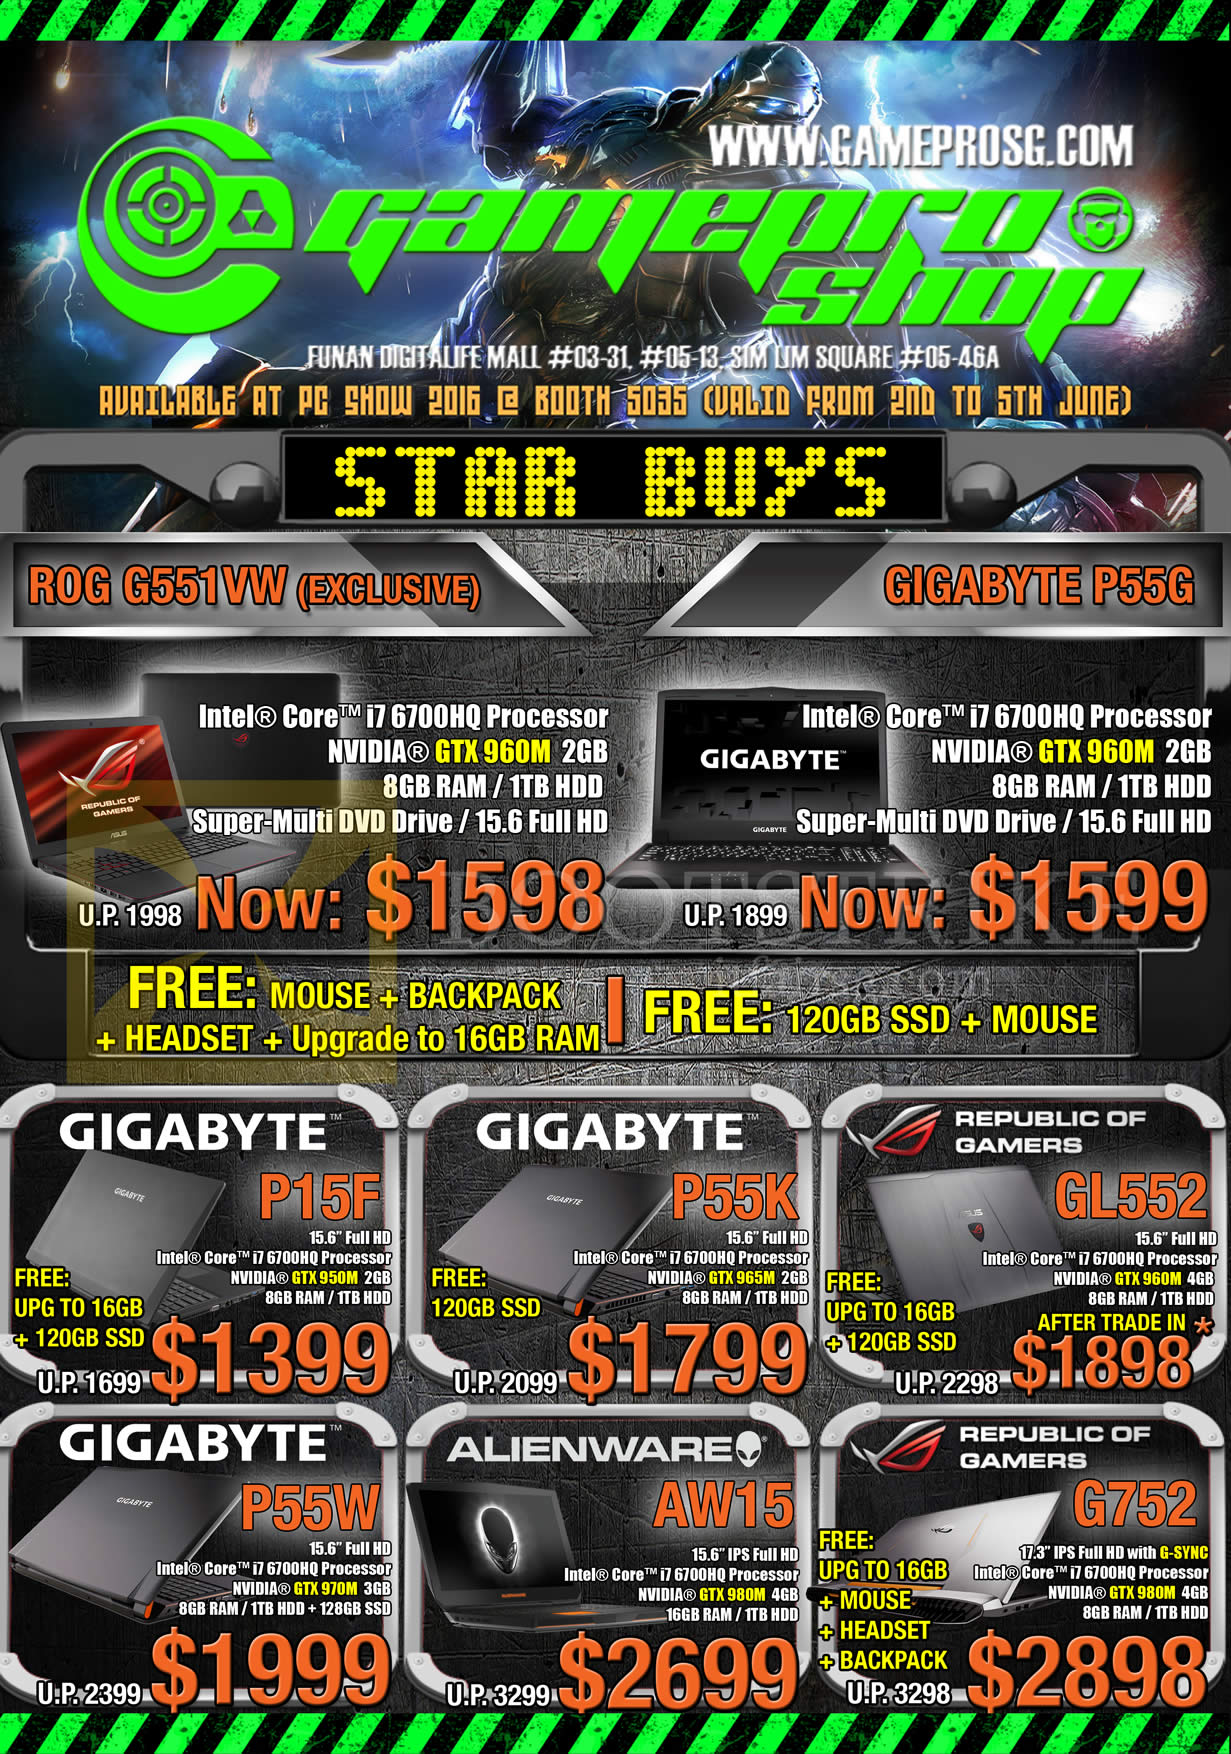 PC SHOW 2016 price list image brochure of GamePro Shop Notebooks Gigabyte ROG G551vW, Gigabyte P55G, P15F, P55K, GL552, P55W, AW15, G752